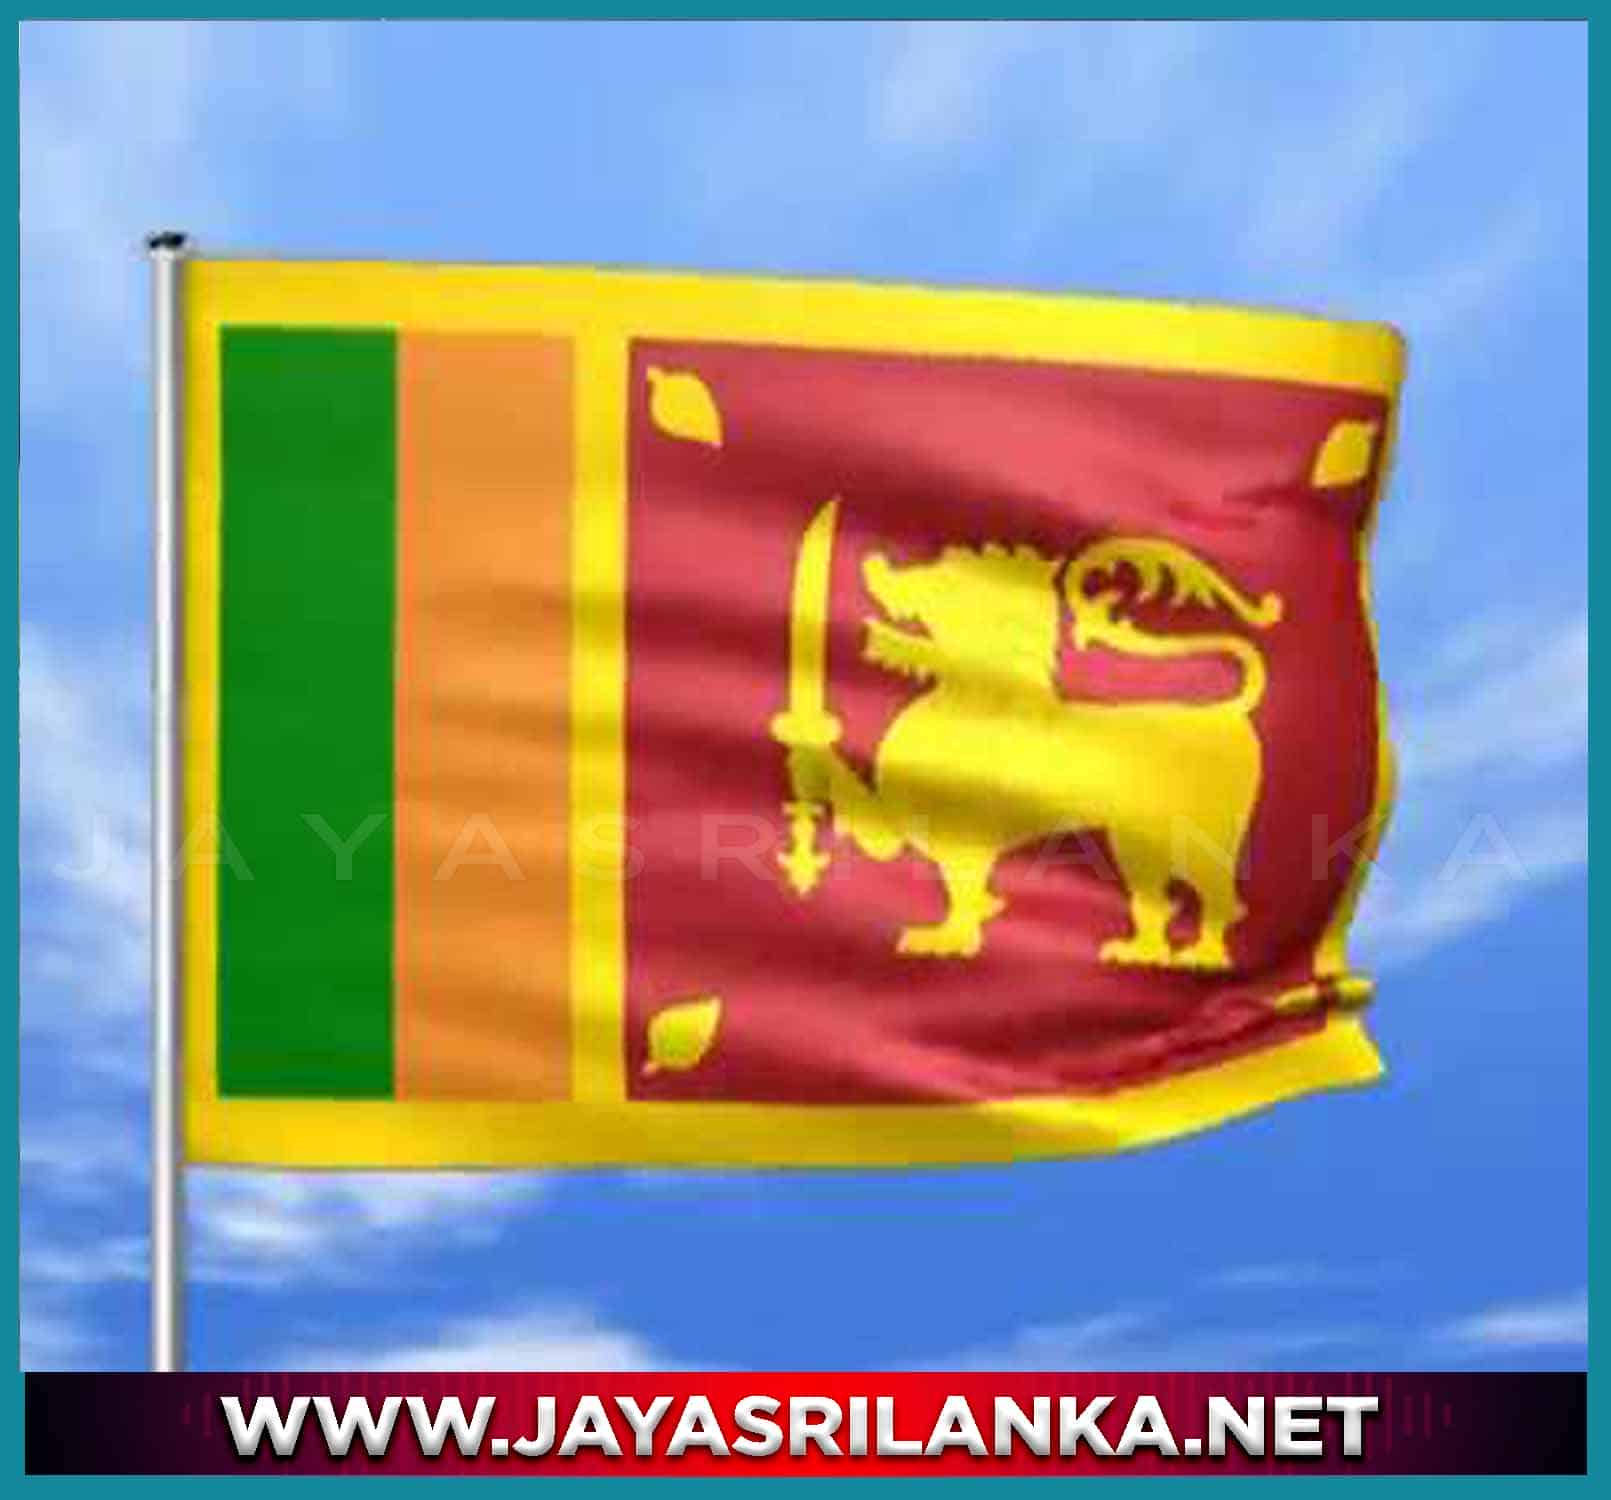 Sri Lanka National Anthem (Tamil) Sri Lanka Thaye